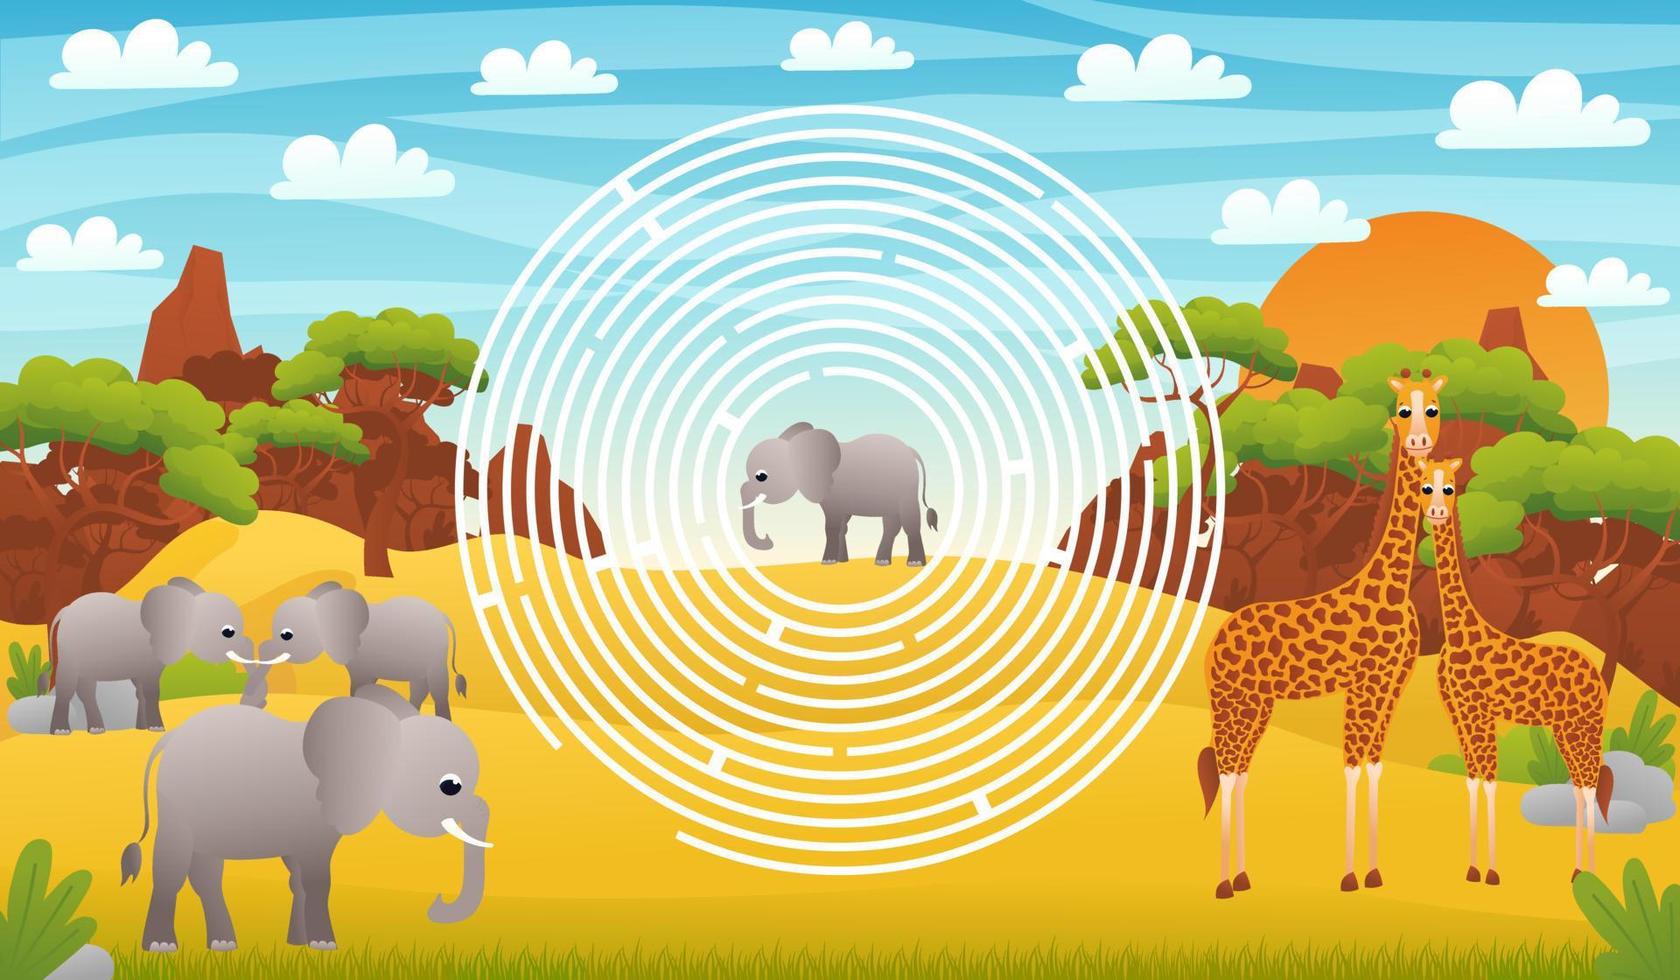 labyrinthe de cercle du désert safari pour les enfants avec des personnages d'éléphants mignons, aide à trouver le bon chemin, feuille de calcul imprimable en style dessin animé pour l'école, thème de la faune animale vecteur